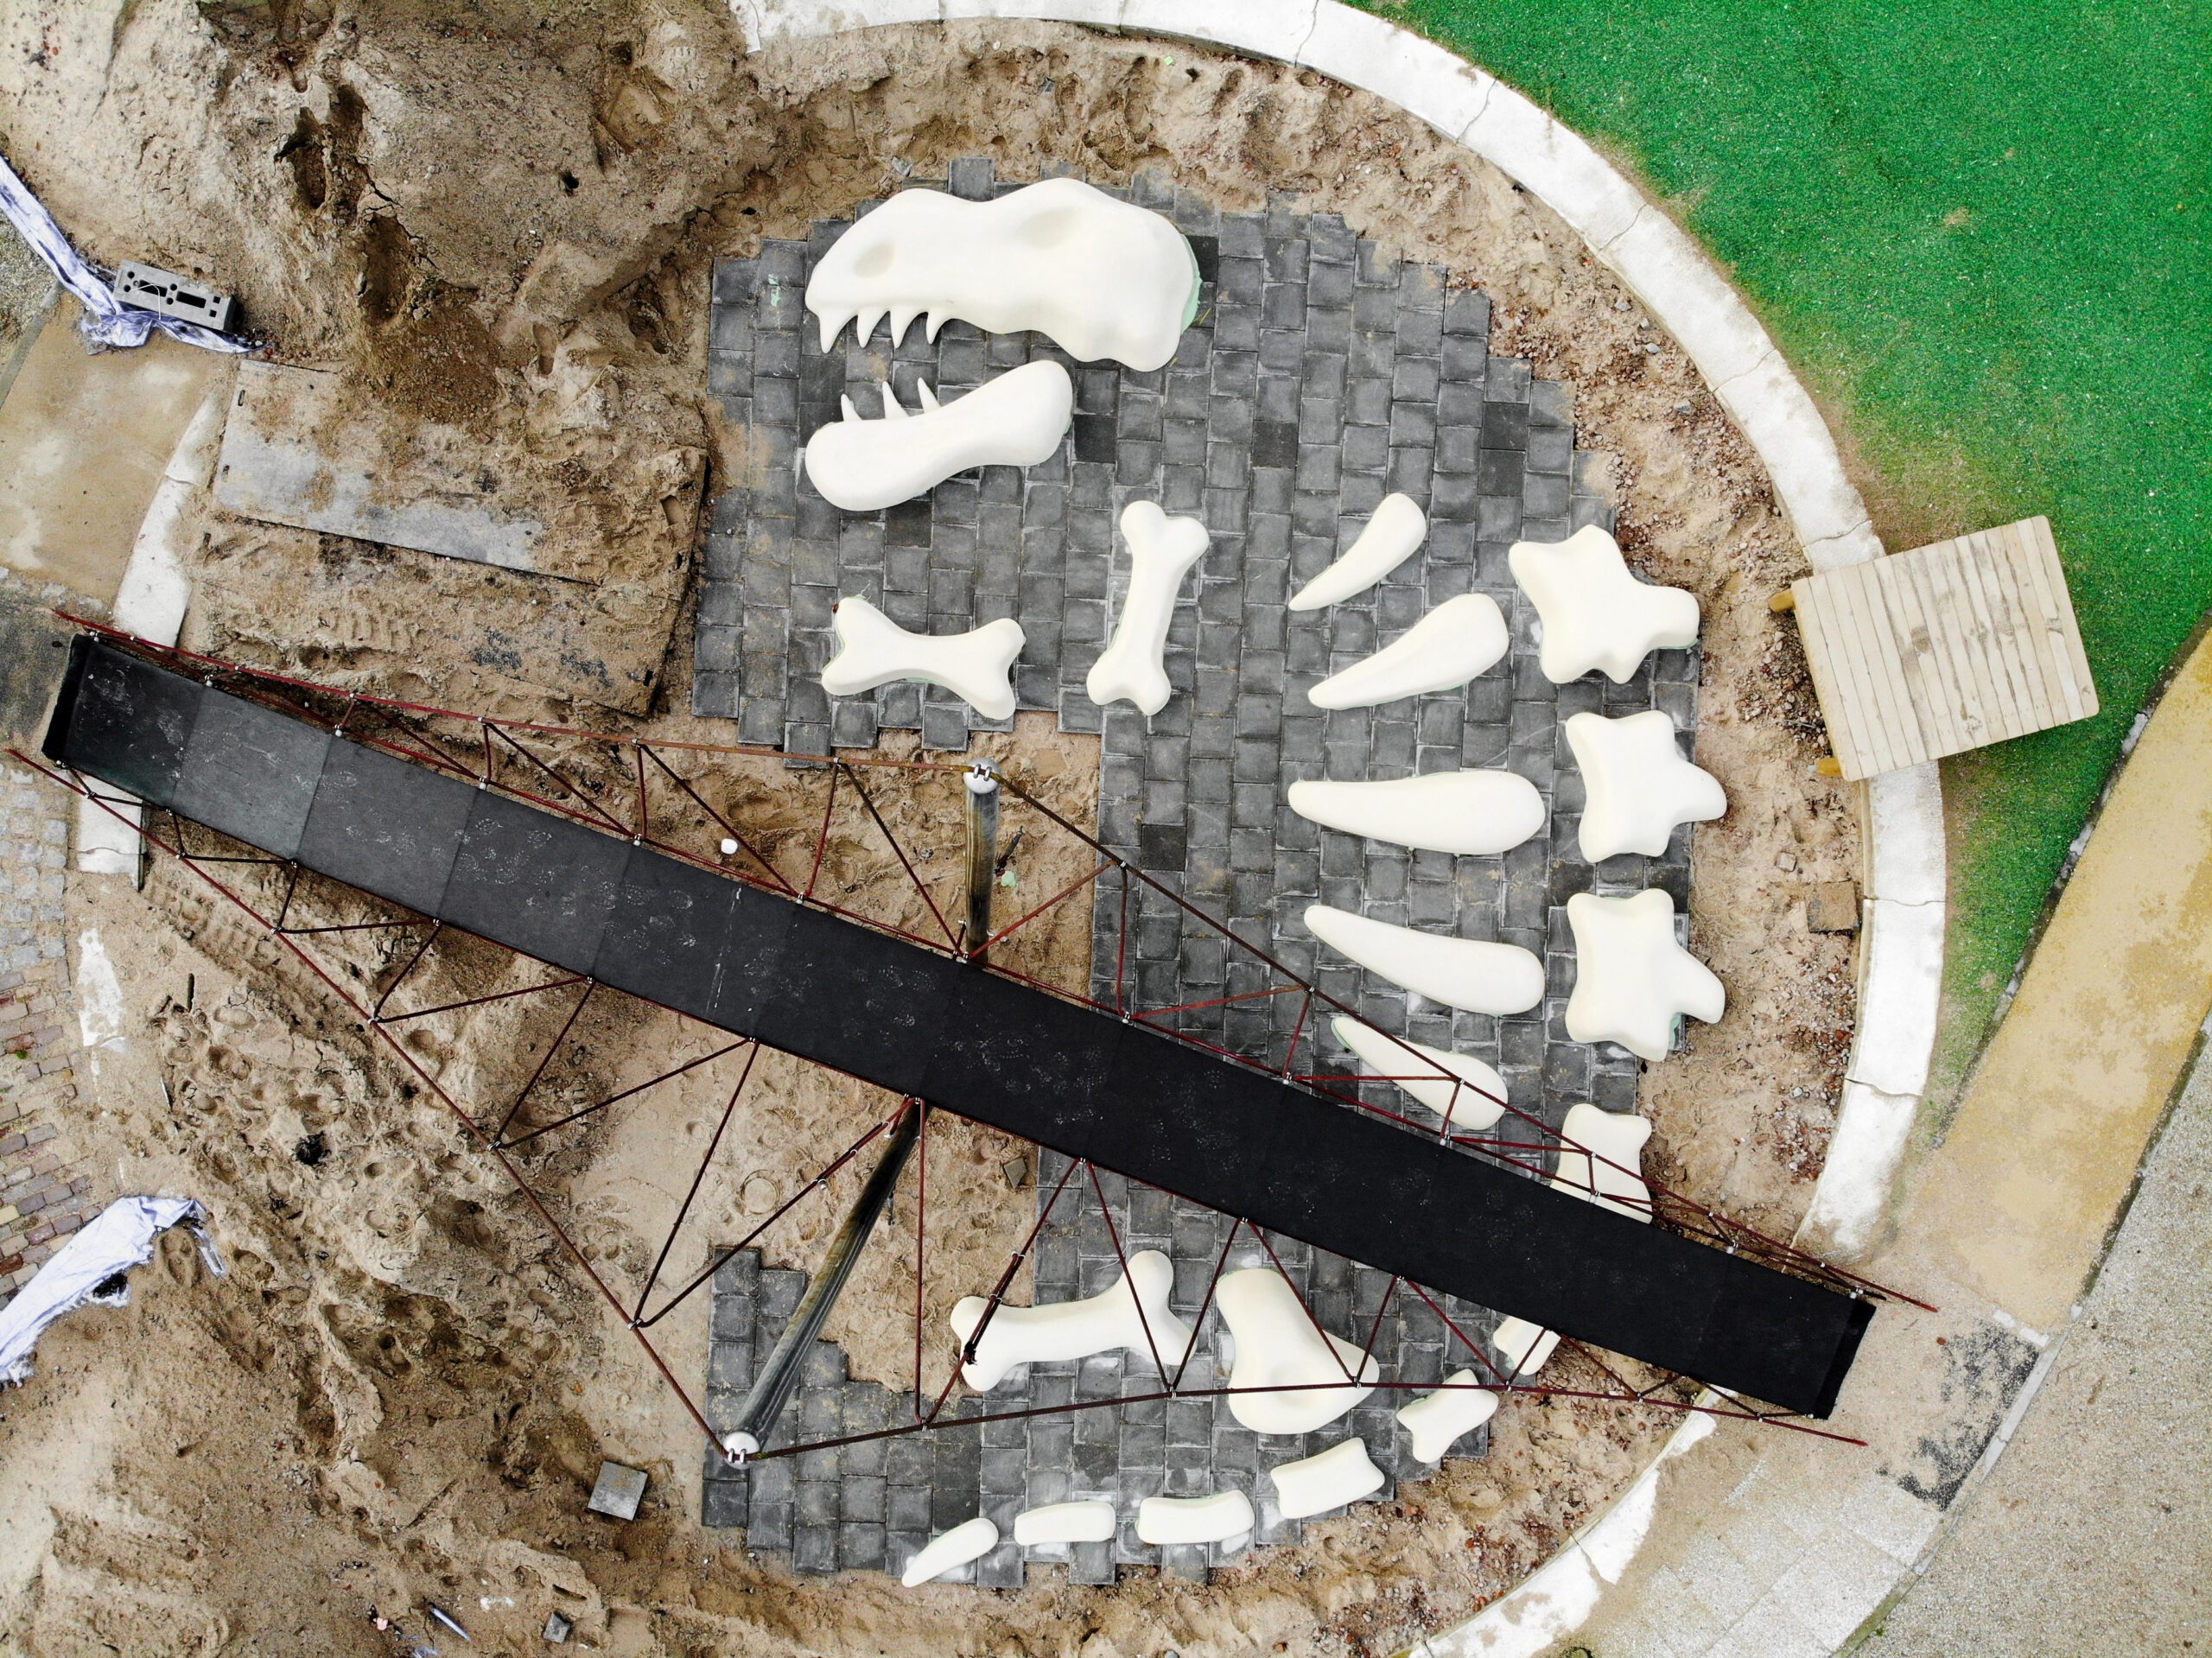 3d geprint dino skelet opgraving Rotterdam, zandbak met botten van dinosaurus, Branco van Danzigtpark, rubbervloer, EPDM rubber, speeltuin, speelwaarde